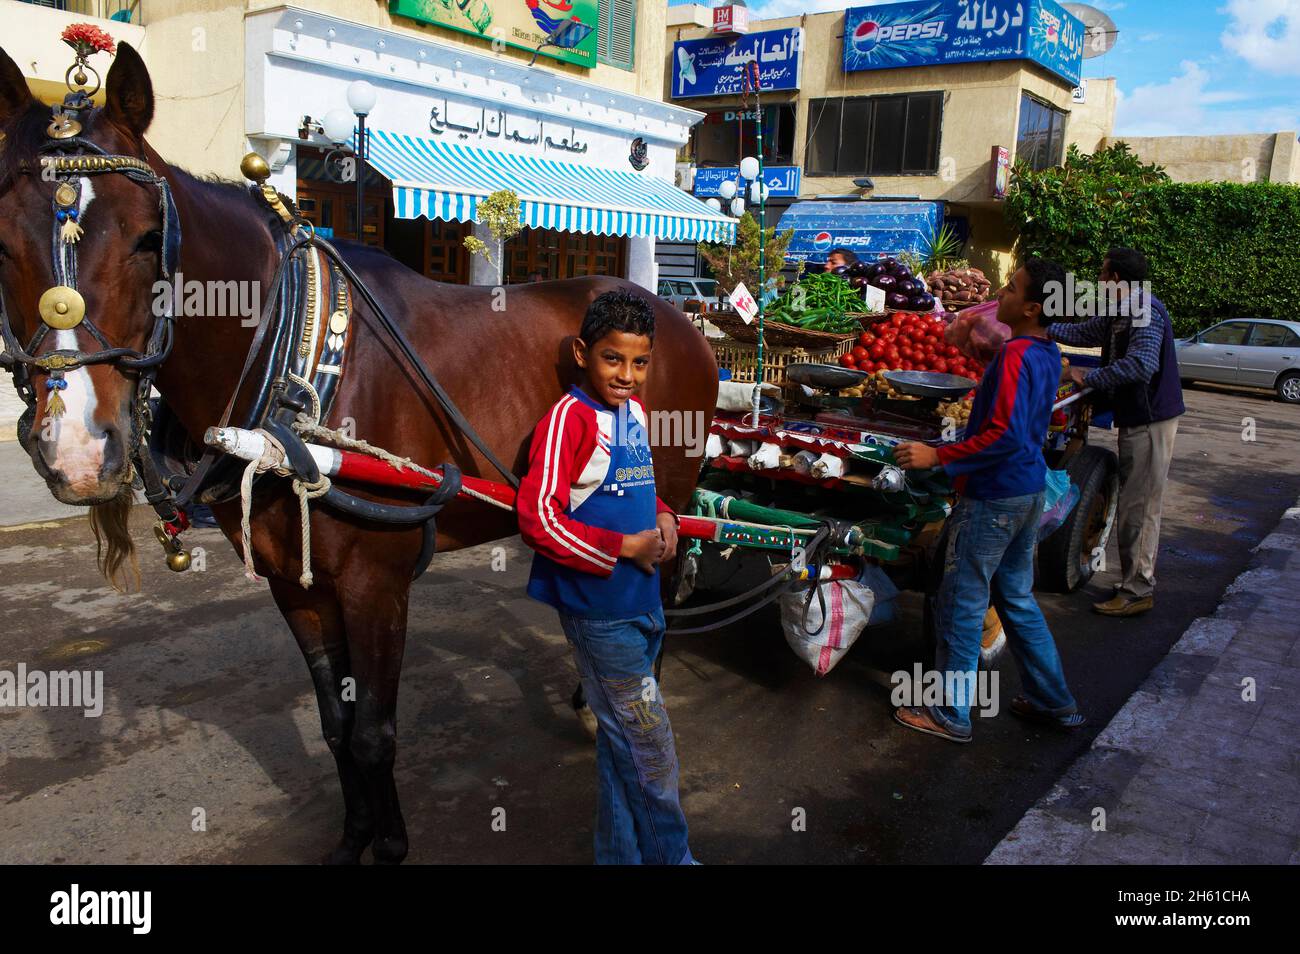 Egypte, la Côte méditerranéenne, Alexandrie, marchand de legumes ambulant. // Ägypten, Alexandria, umherziehender Gemüsemarkt. Stockfoto